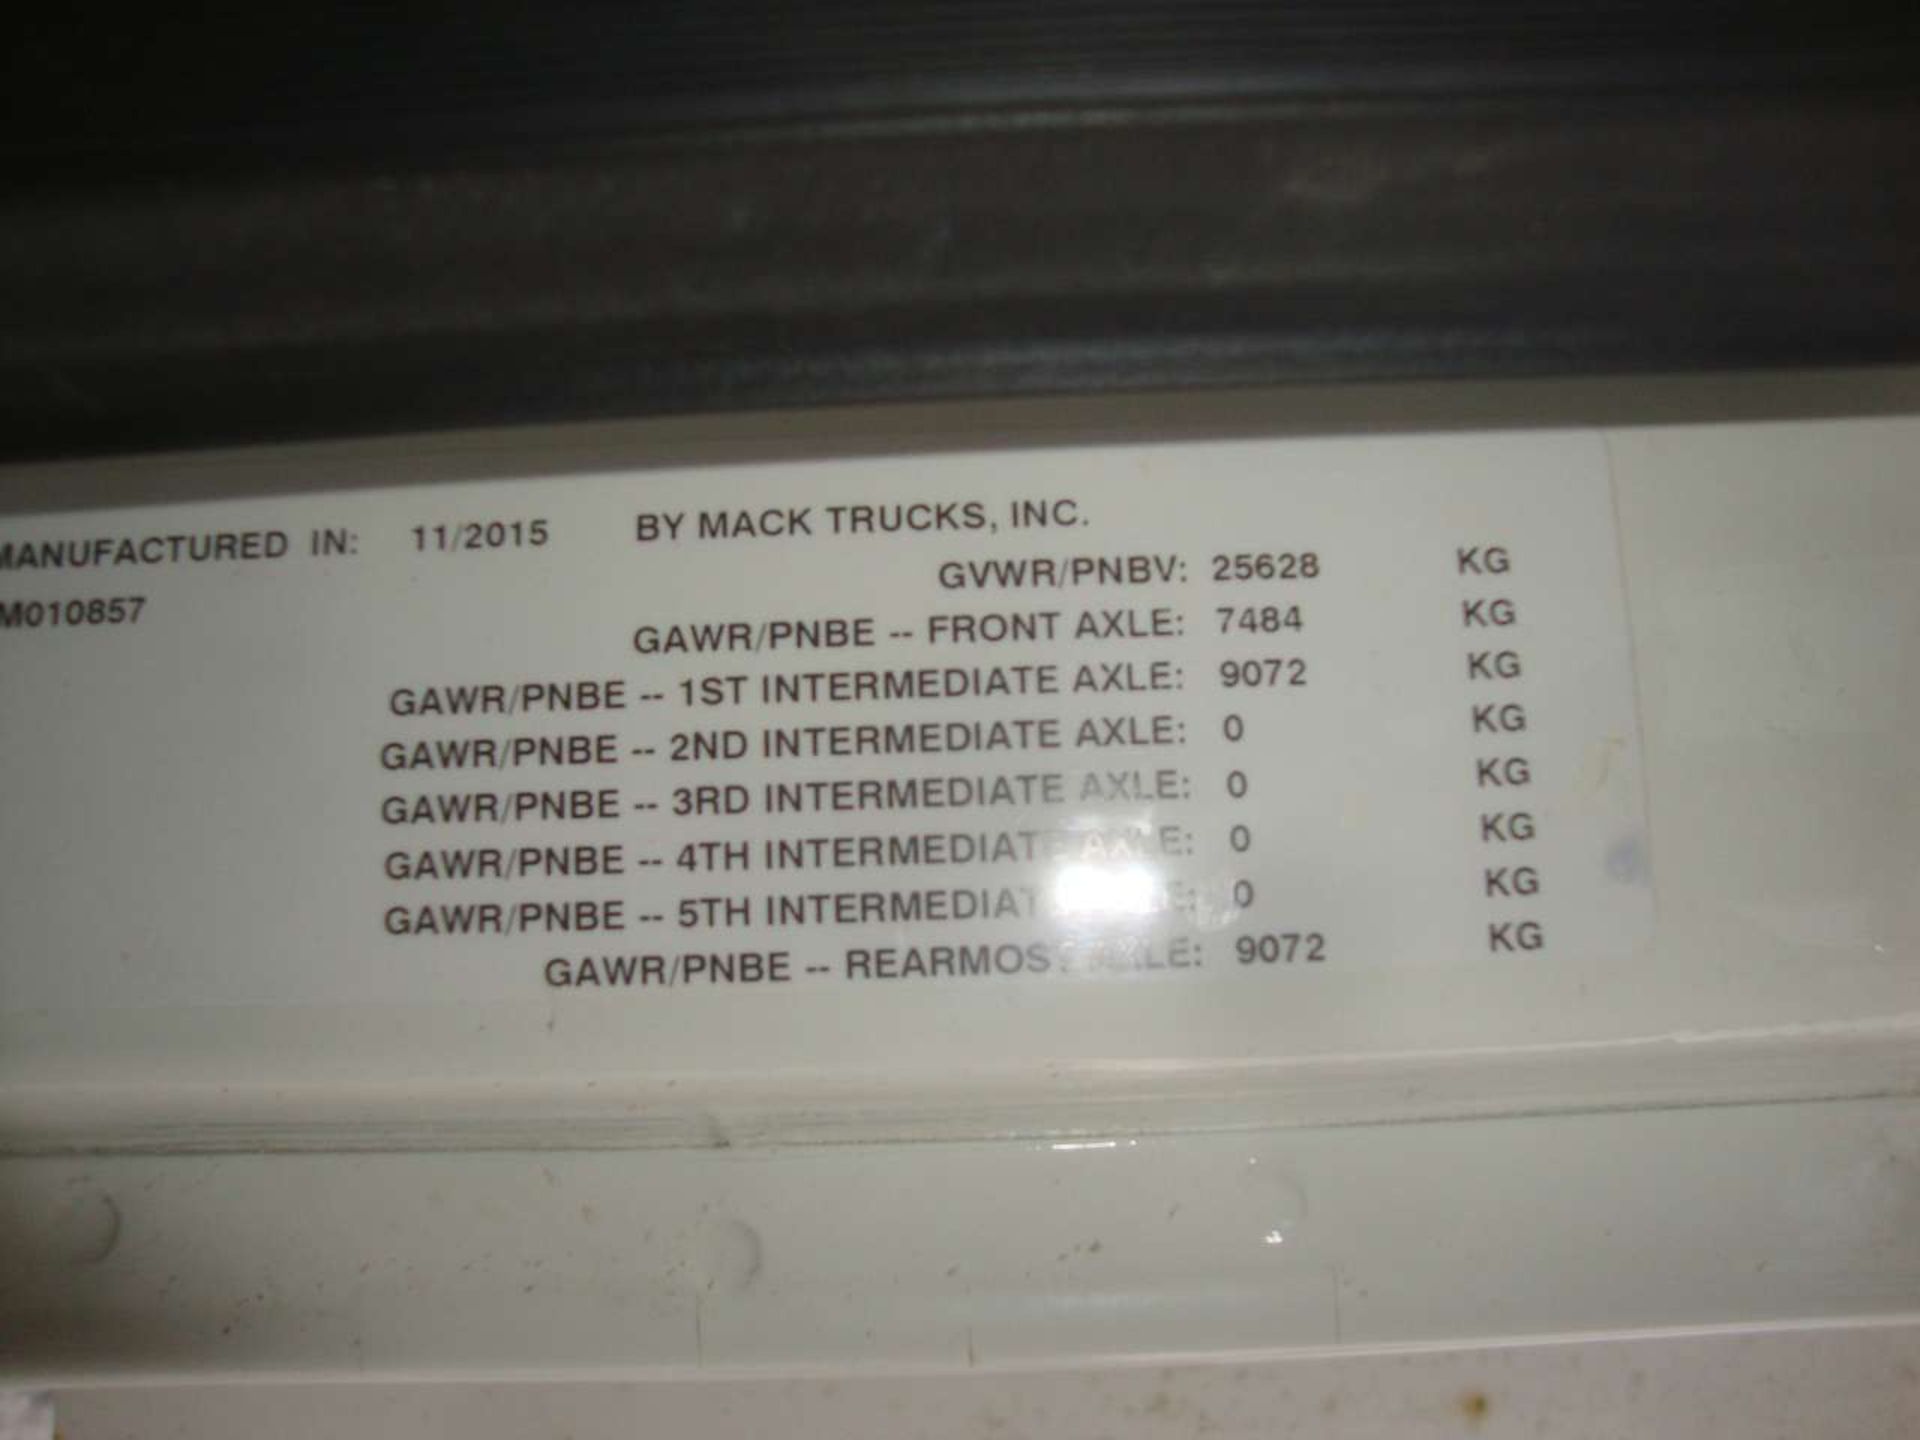 2016 Mack GU533 Granite Tandem Axle Dump Truck - Image 8 of 21